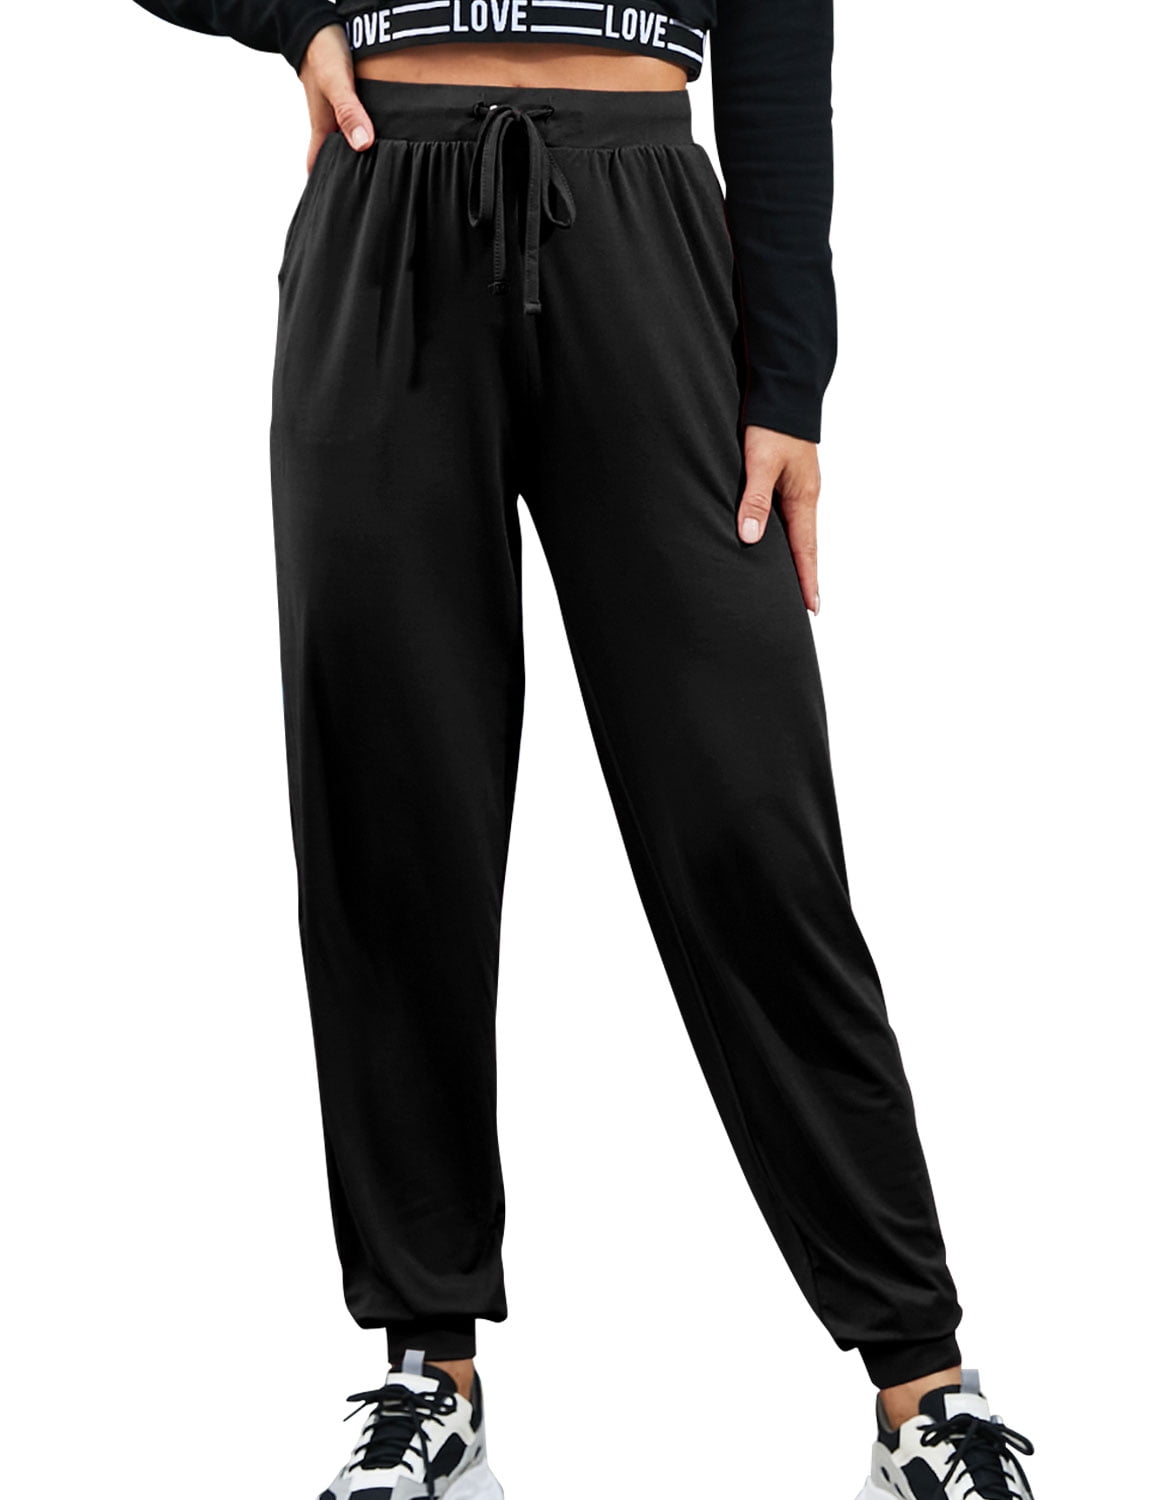 Doublju Women's Basic Comfy Drawstring Jogger Style Yoga Pajama Pants ...